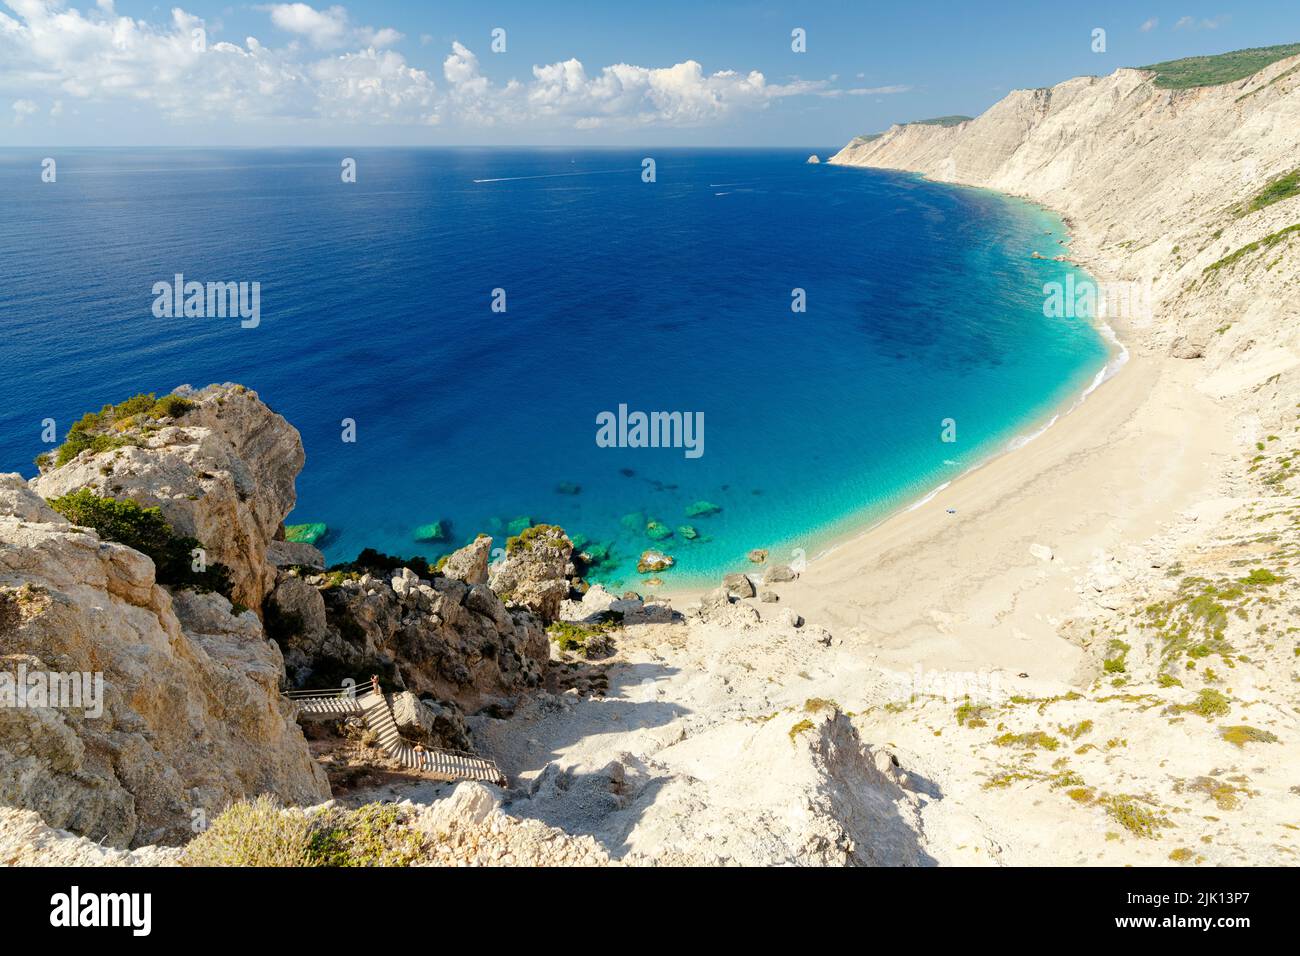 Weißer Sand am Strand von Ammos, gewaschen vom kristallklaren türkisfarbenen Meer, Blick von oben, Kefalonia, Ionische Inseln, griechische Inseln, Griechenland, Europa Stockfoto